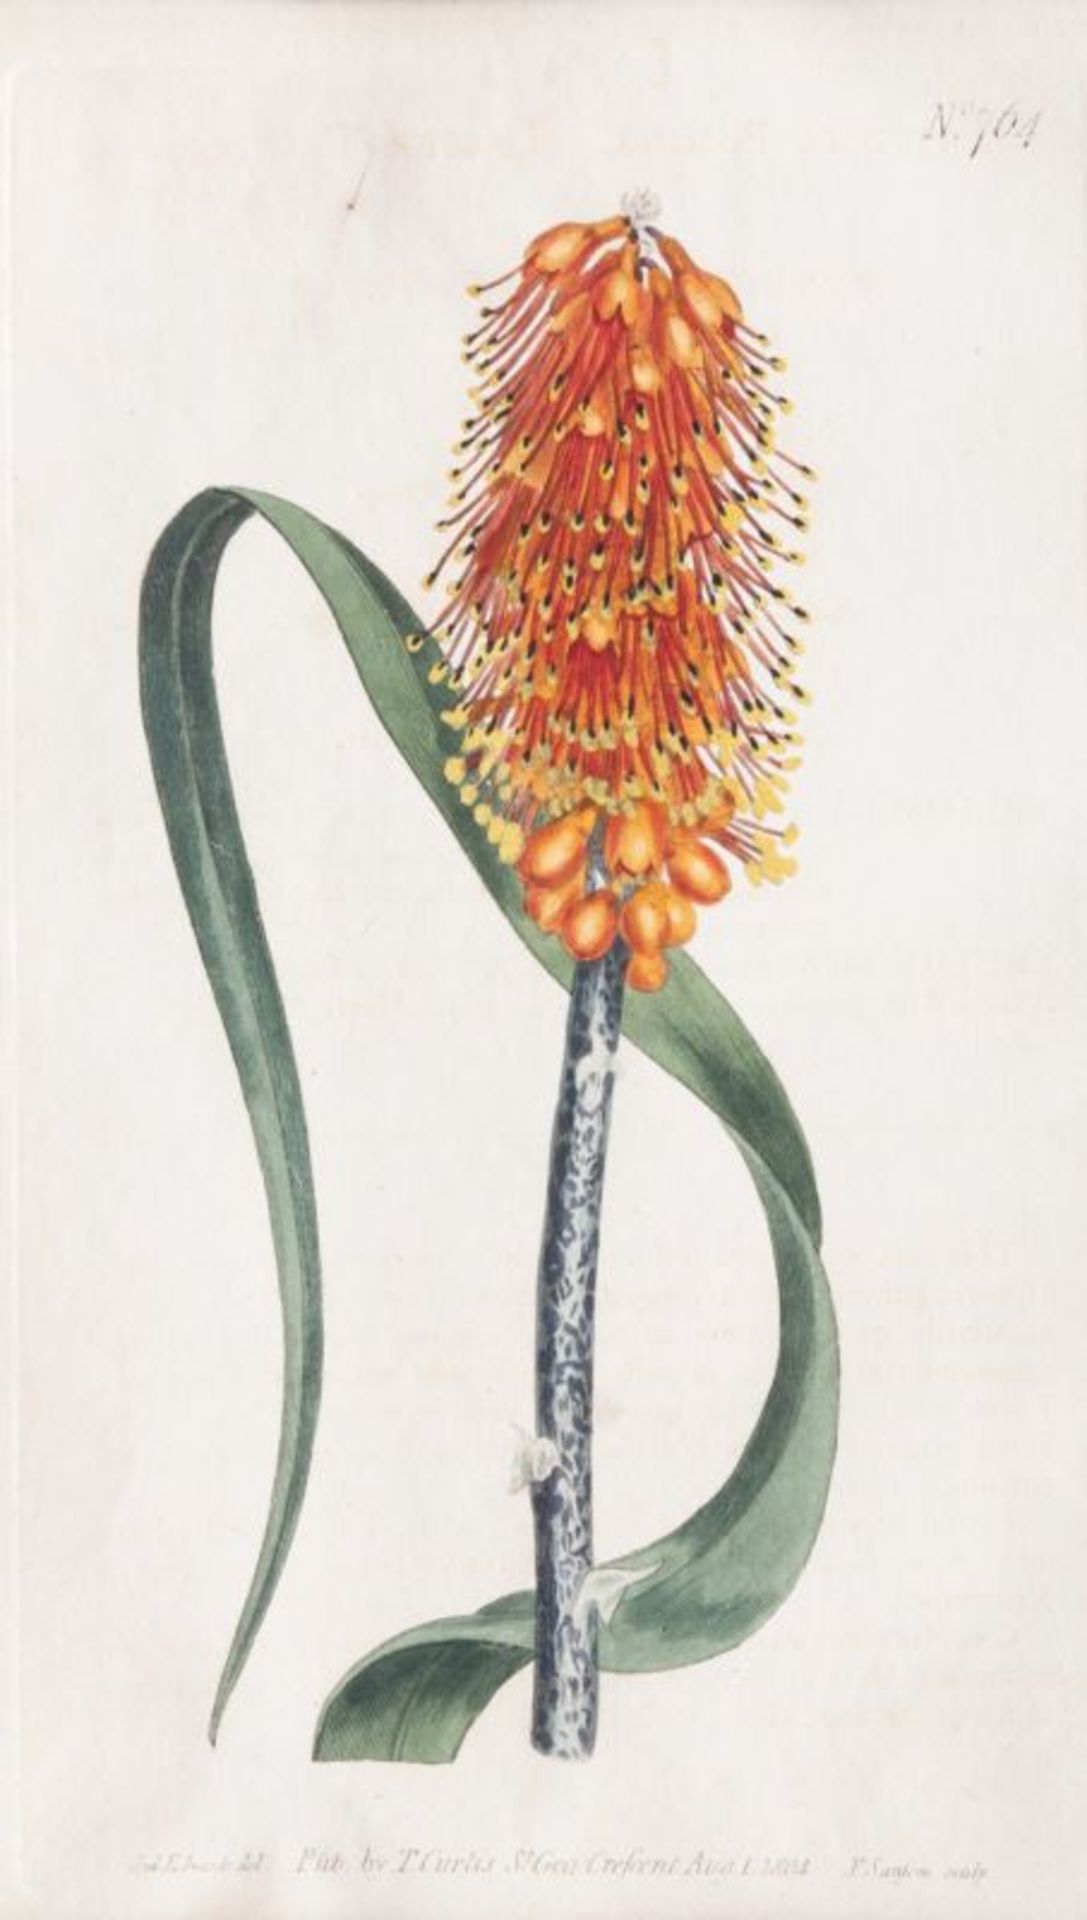 Francis Sansom (London), tätig Ende 18. Jh. Drei botanische Blätter Kupferstiche, handkoloriert, - Bild 2 aus 4